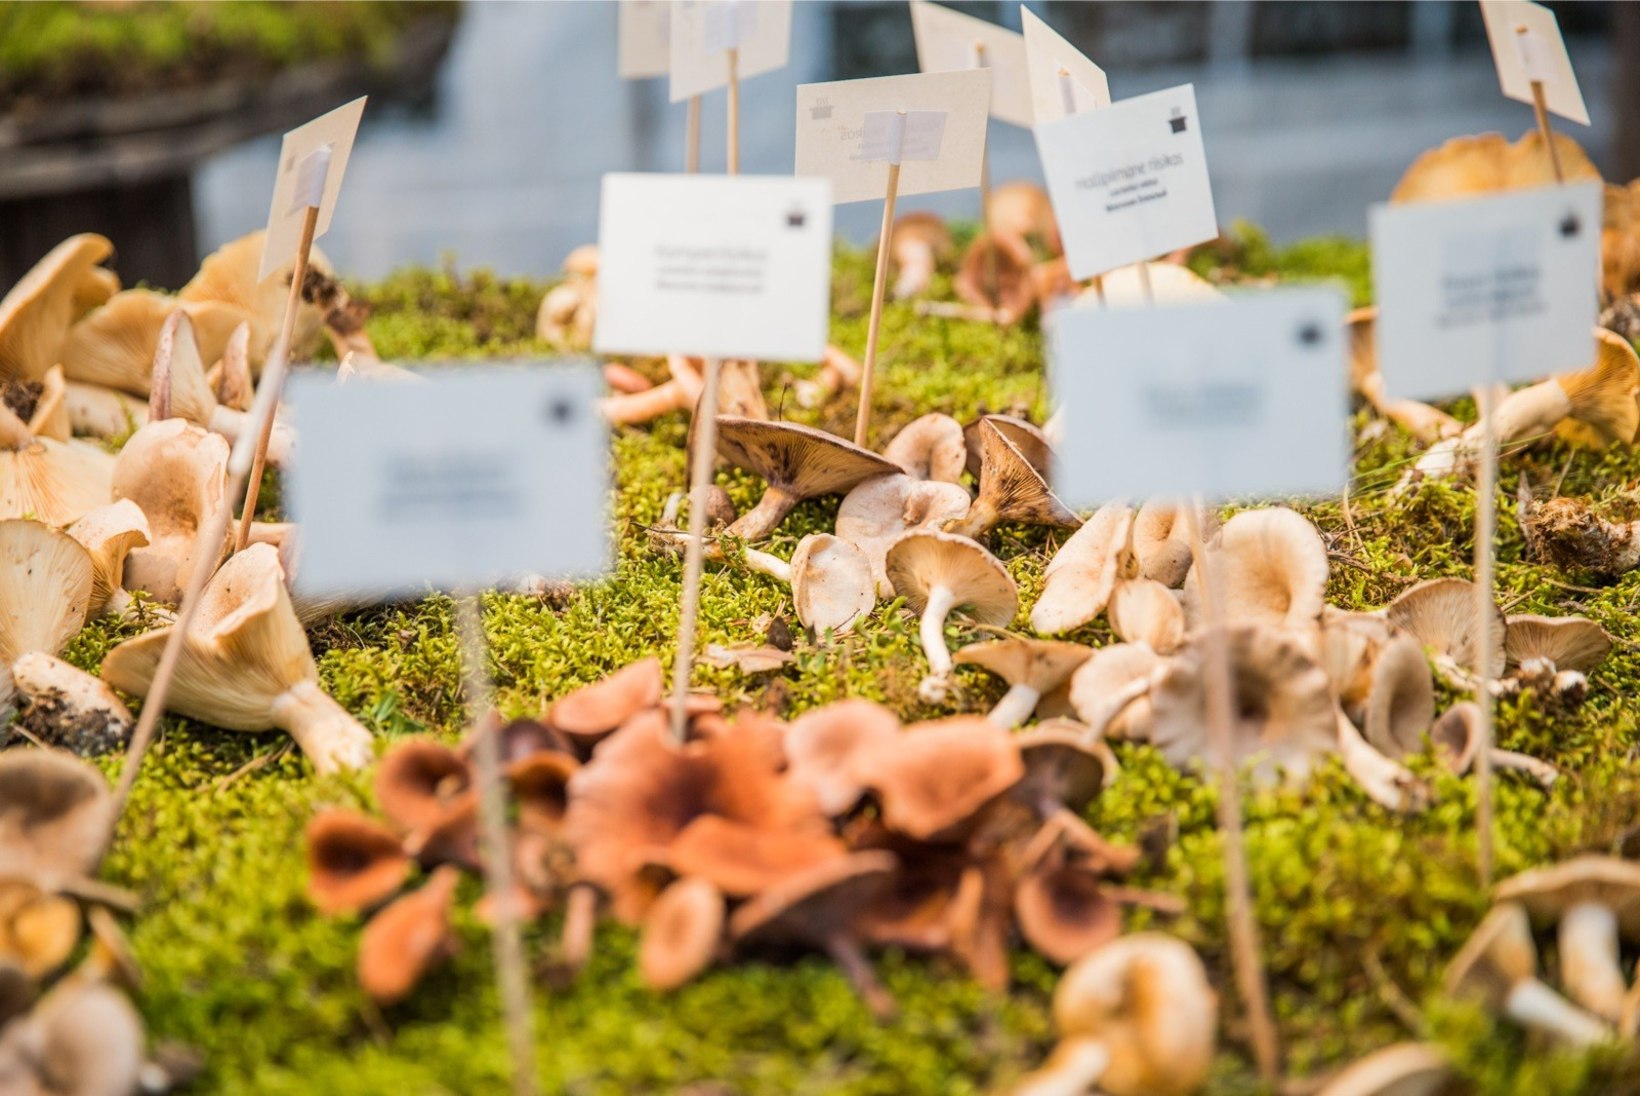 ÕHTULEHE VIDEO | SADA JA SEENED: kuidas Loodusmuuseumi näituseks seeni korjatakse ja milliste nippidega saab sarnaseid seeni eristada?